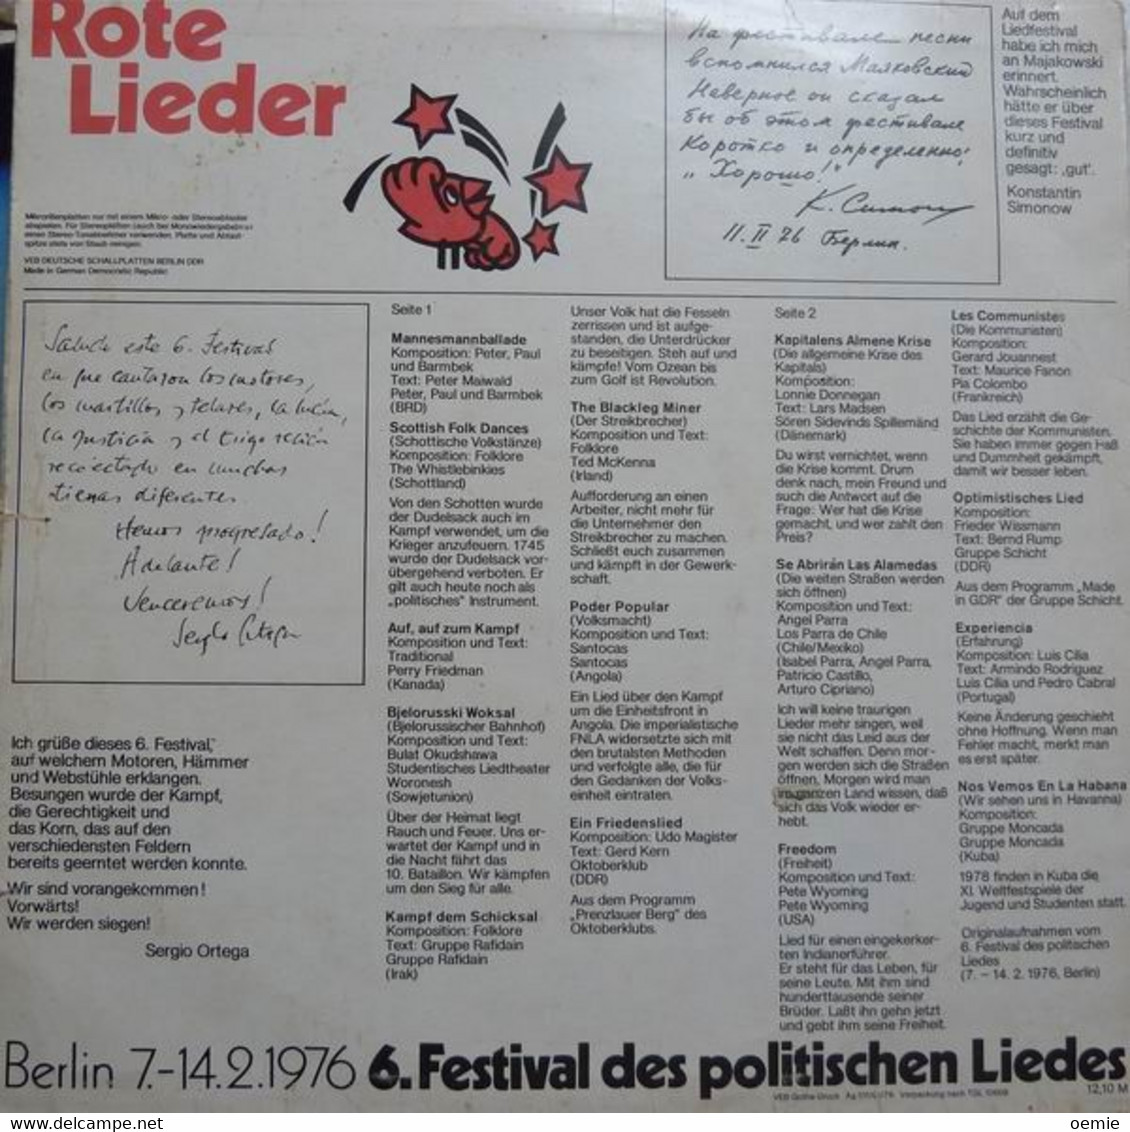 ROTE  LIEDER  °  BERLIN  7 / 14 2 / 1976  °  6 FESTIVAL  DES POLITISCHEN  LIEDES - Sonstige - Deutsche Musik